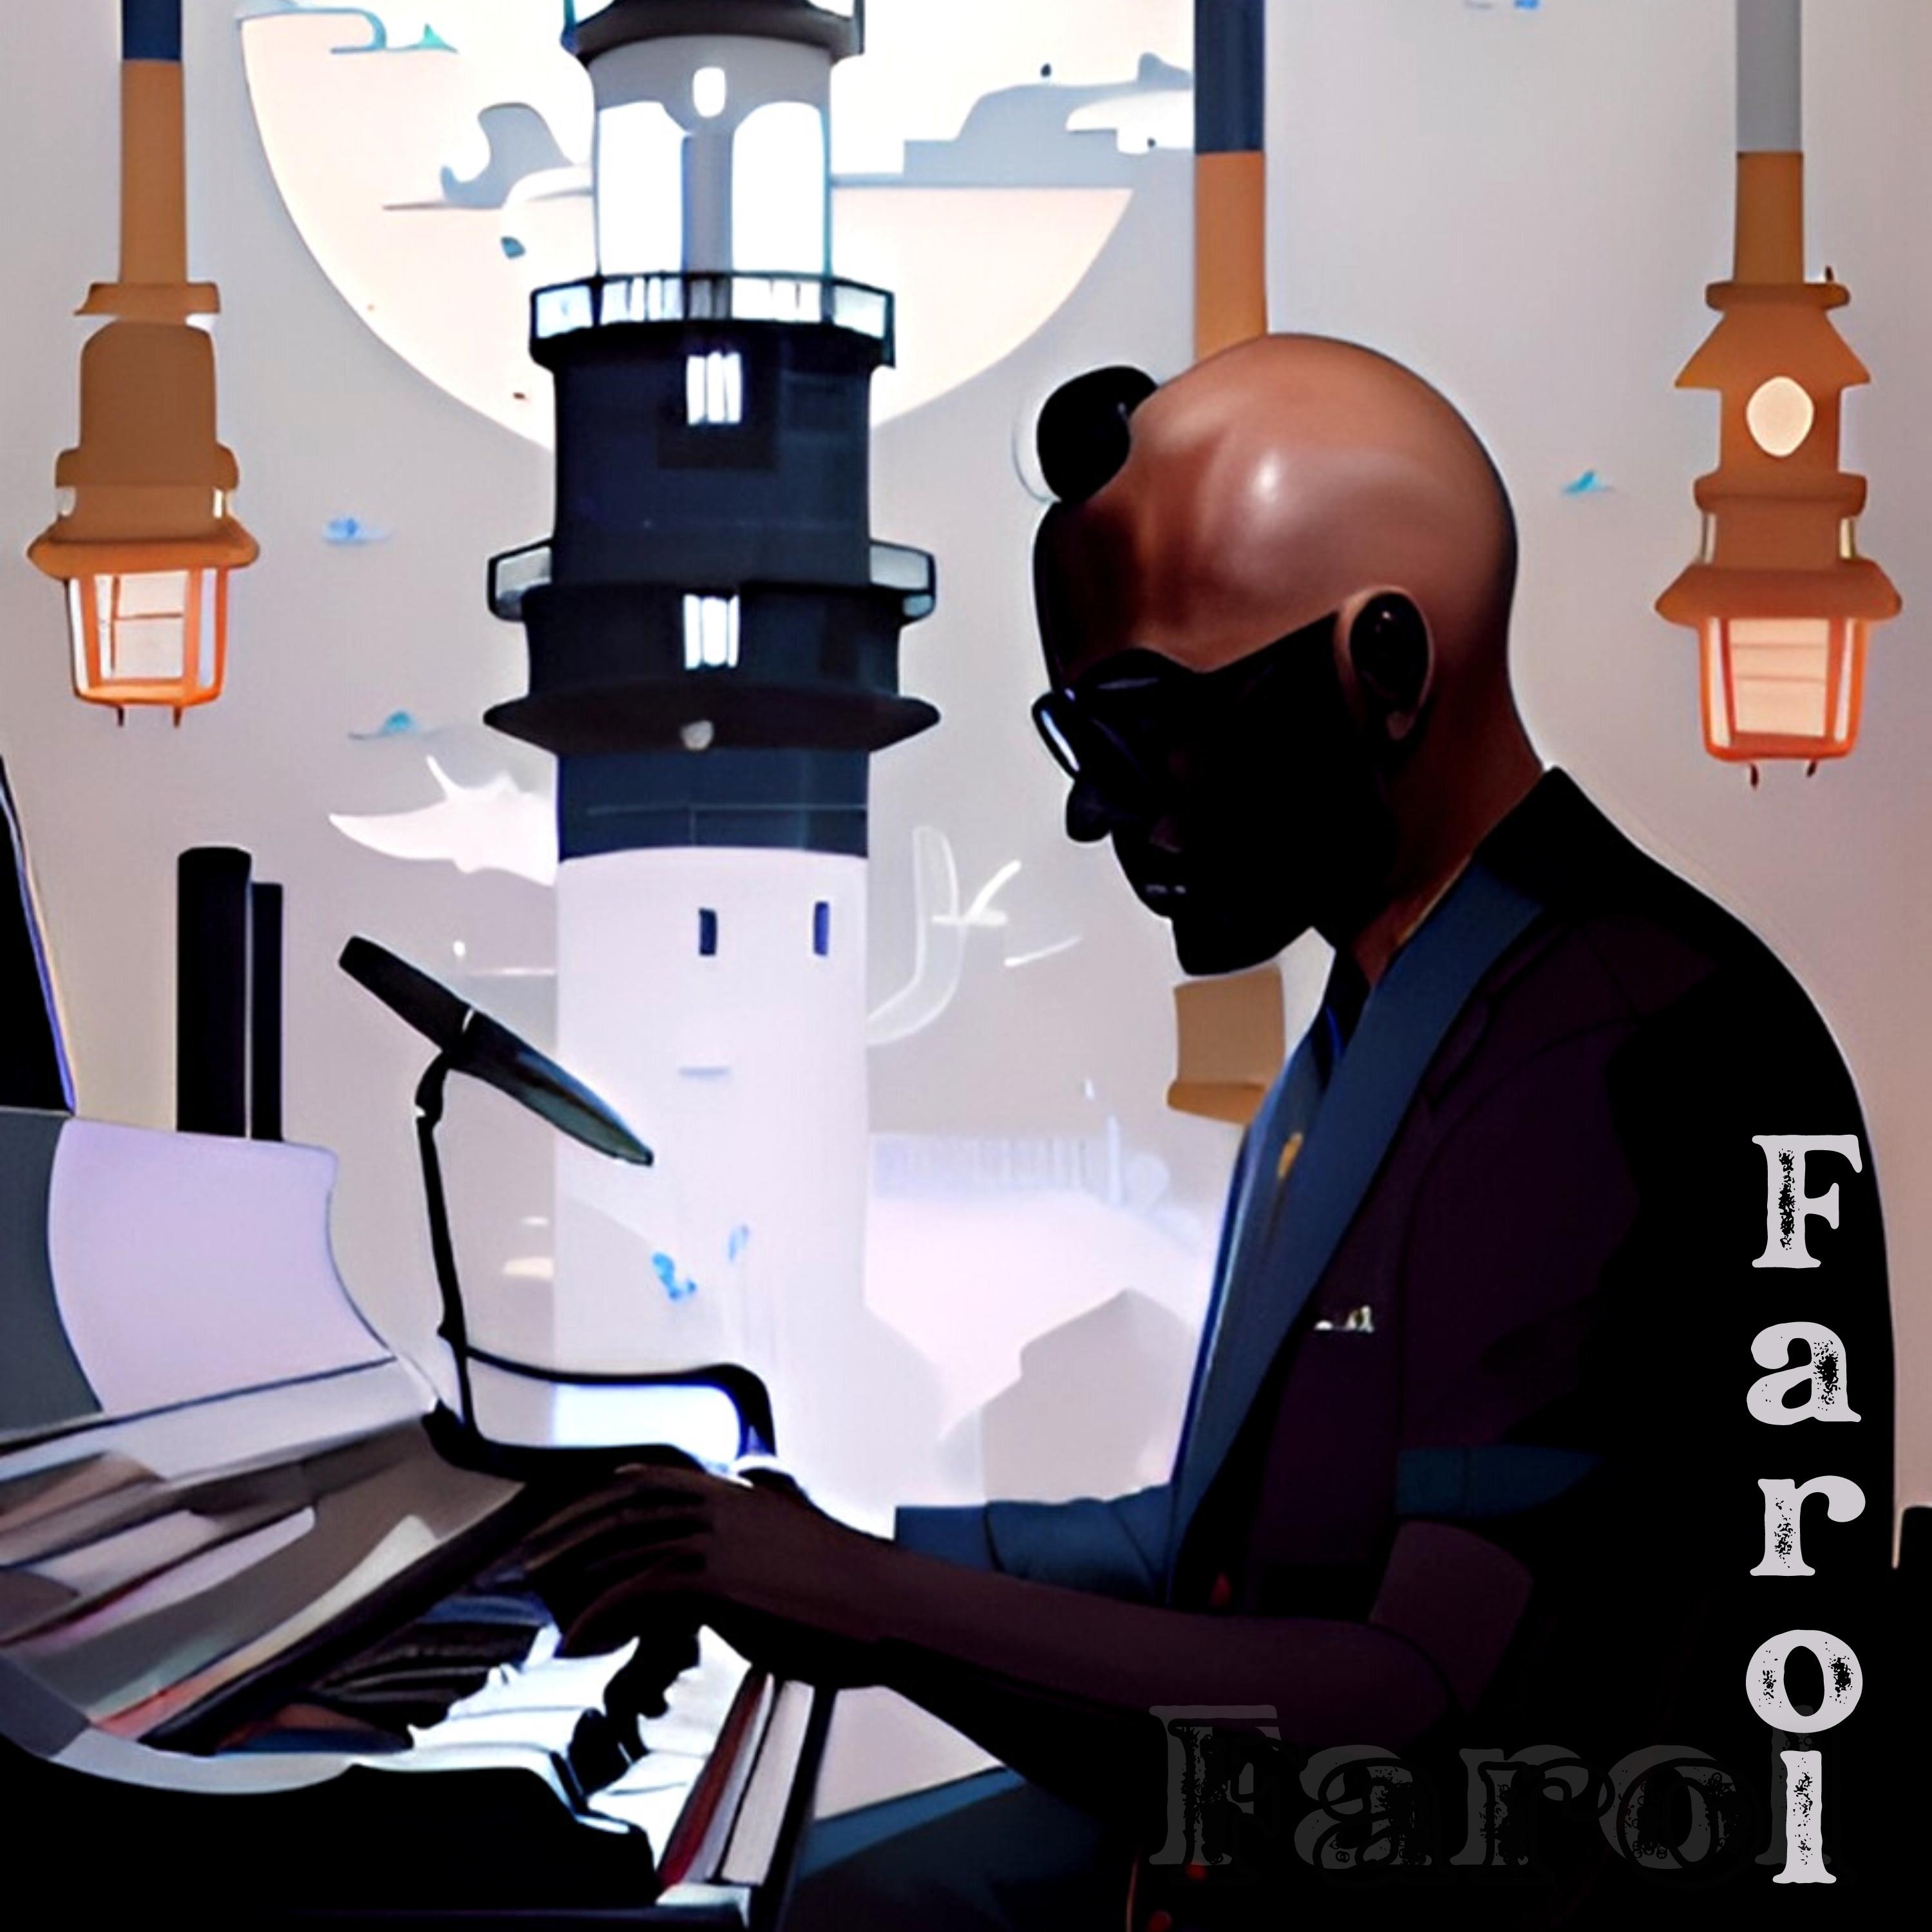 Постер альбома Farol